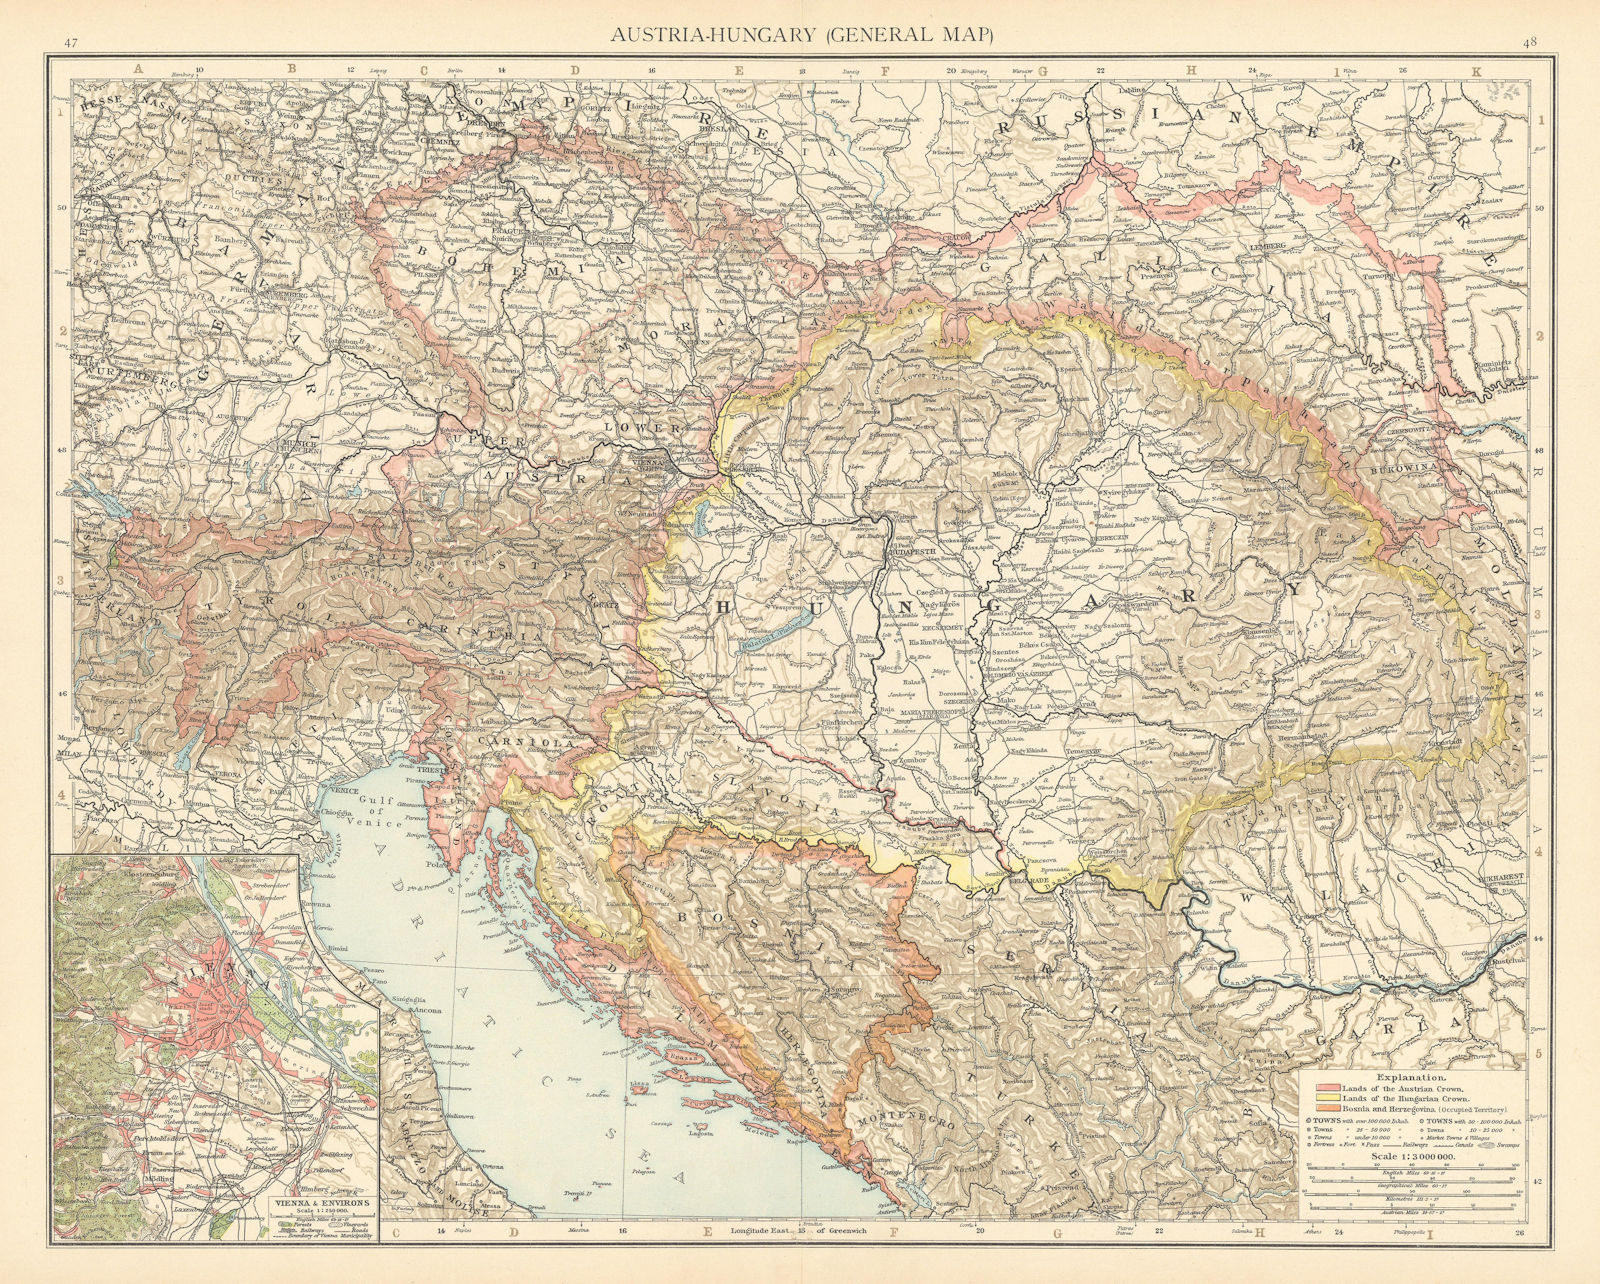 Austria-Hungary. Czechia Croatia Bosnia Serbia. Vienna environs. TIMES 1895 map